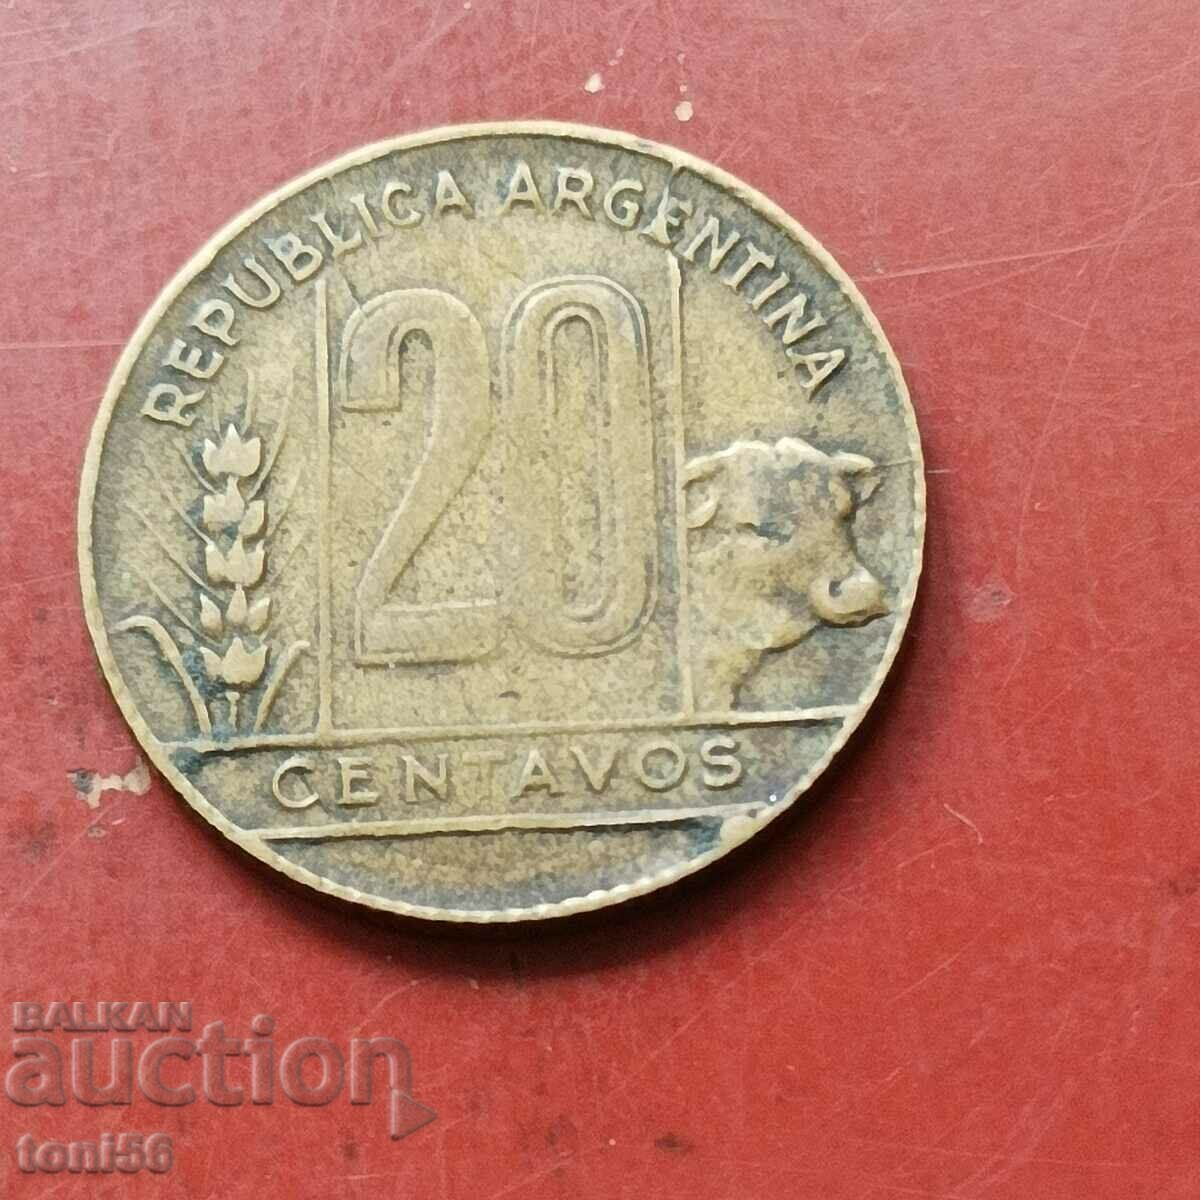 Аржентина 20 сентавос 1950